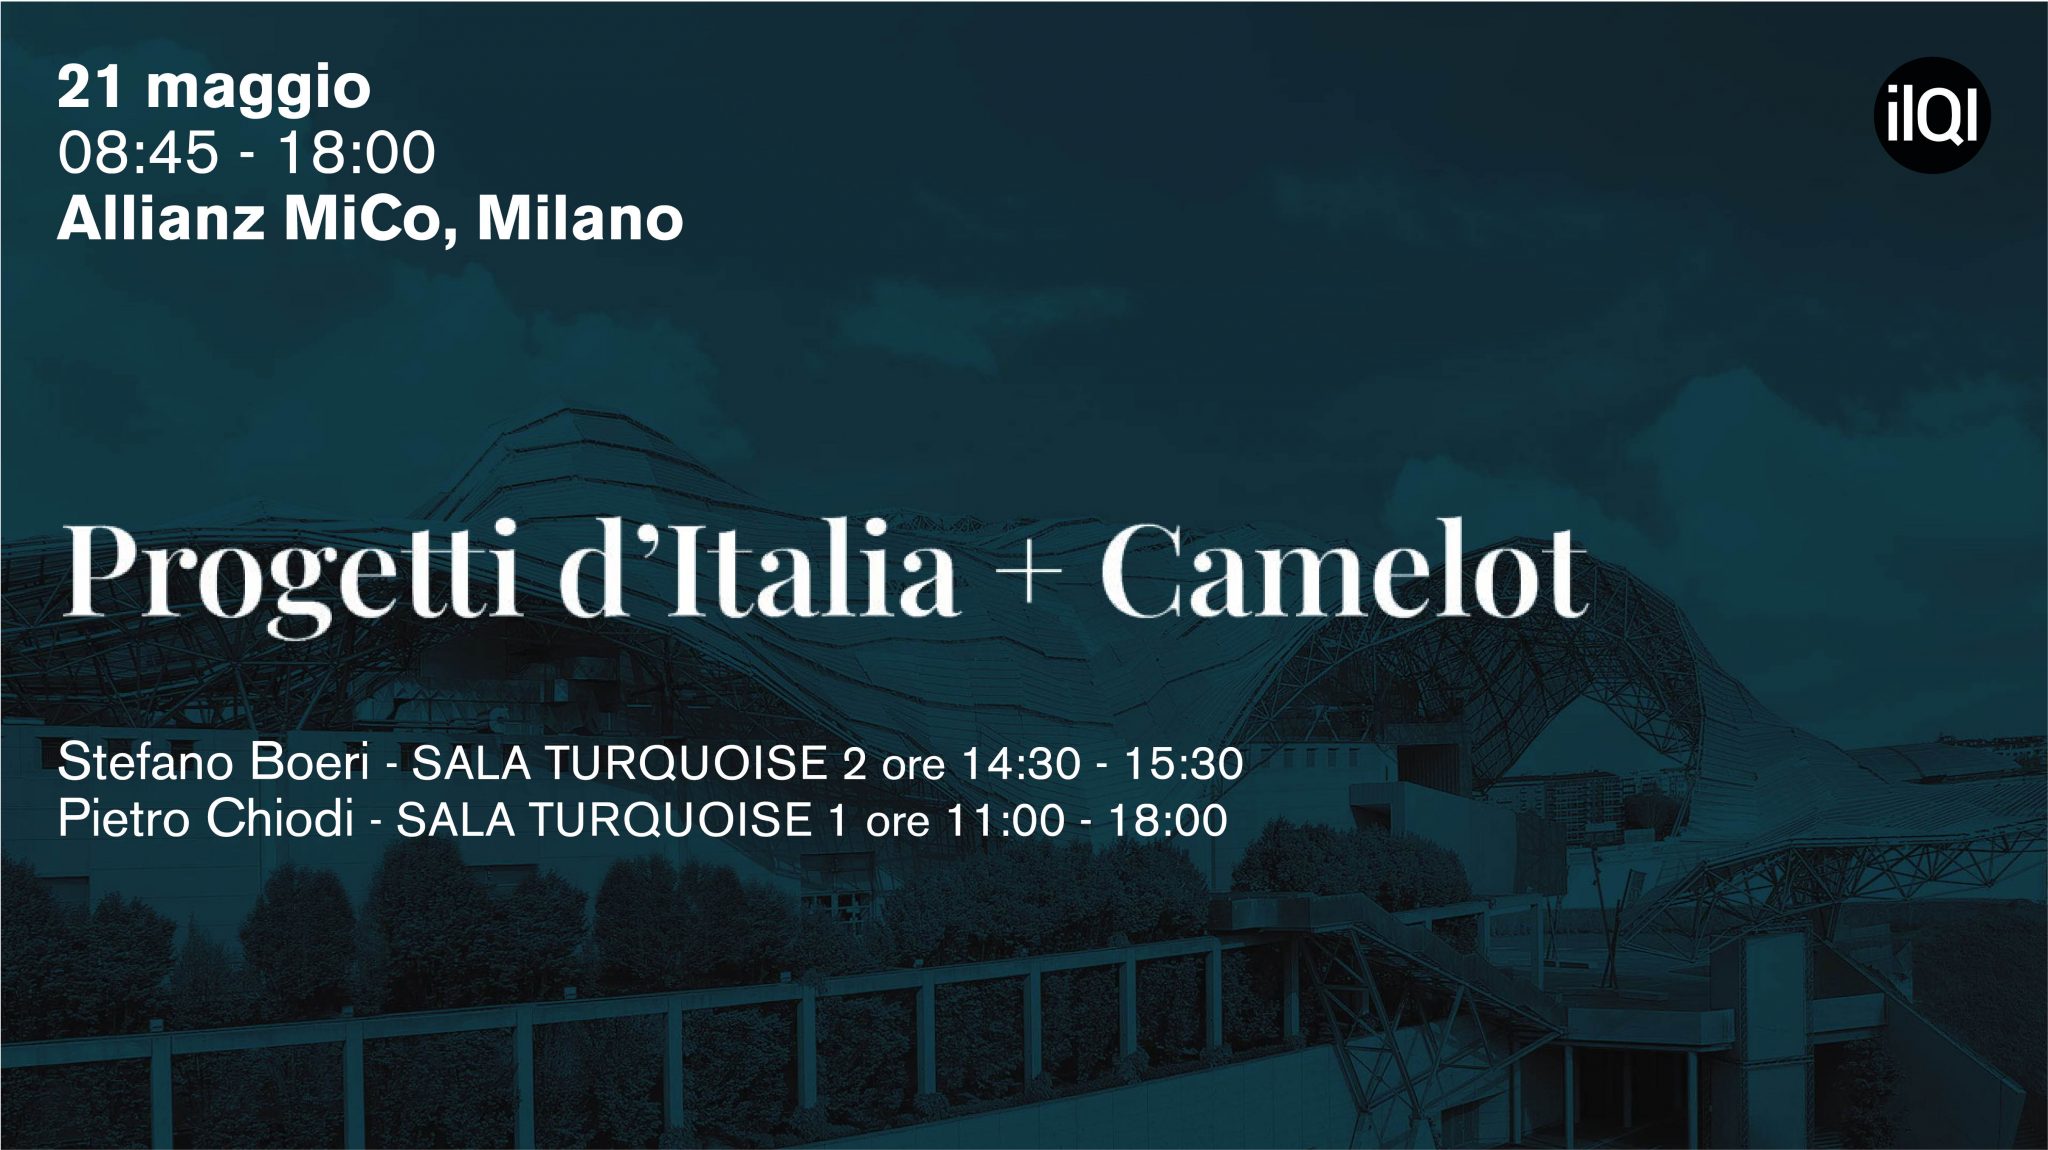 Stefano Boeri Architects participate at Progetti d'Italia + Camelot event